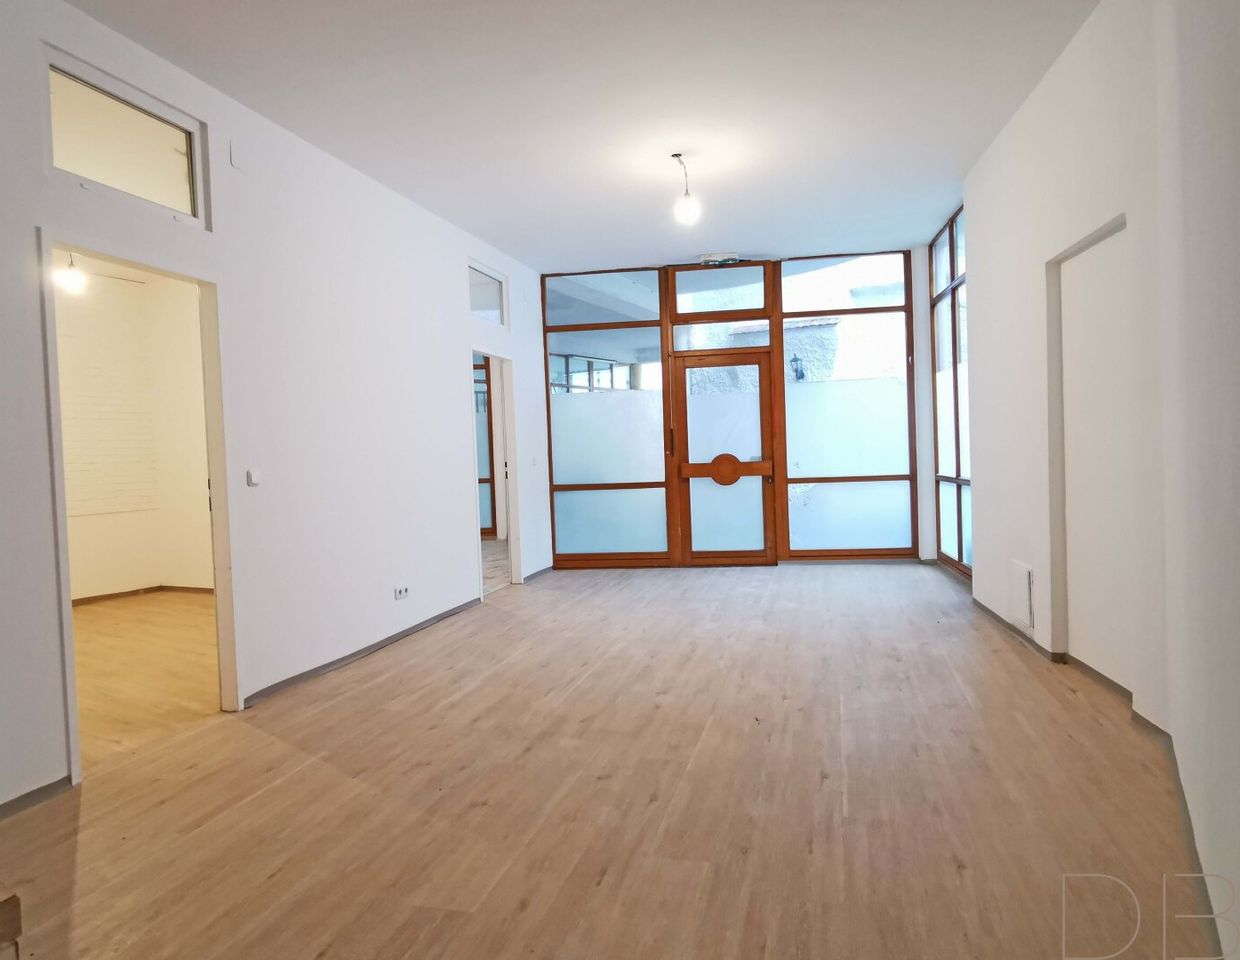 DB IMMOBILIEN | PROVISIONSFREIE, barrierefreie 2,5 Zimmer Wohnung in Brucker Fußgänger Zone zu mieten! Mietpreis INKLUSIVE Heizkosten!